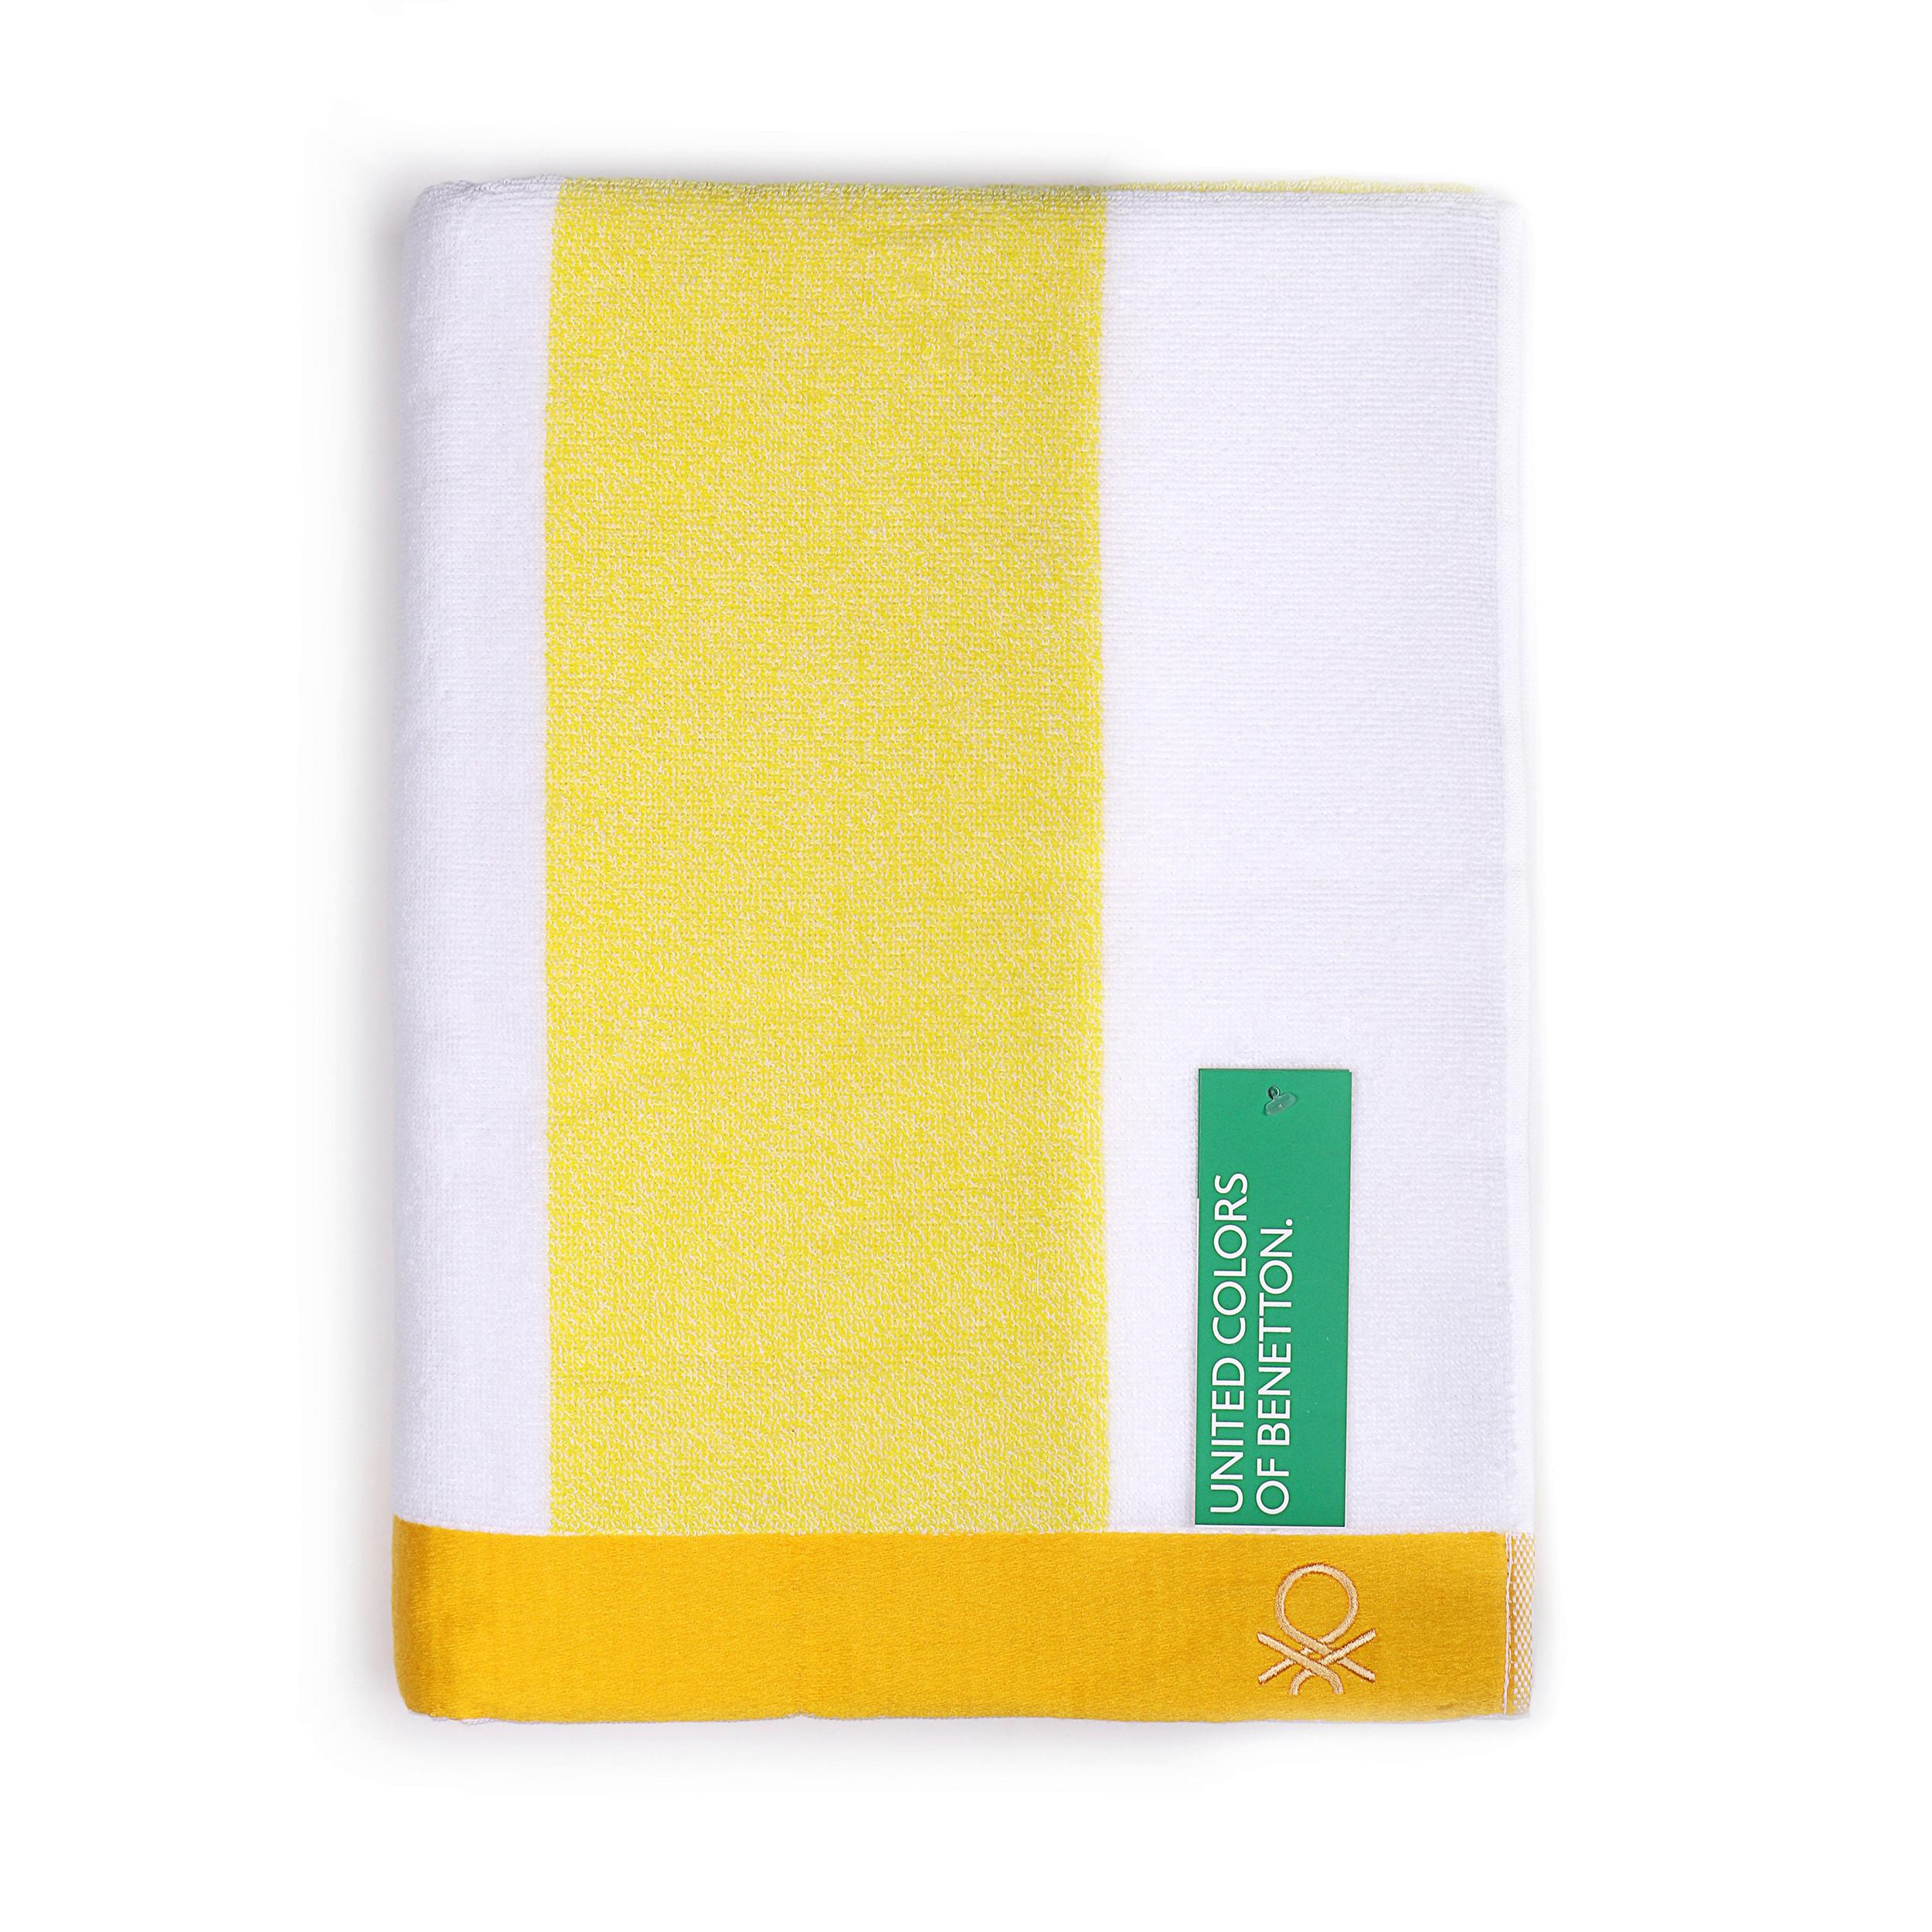 Strandtuch Baumwolle Gelb/ Weiß 90x160x1,5 cm - Gelb/Weiß, Basics, Textil (90/160/1.5cm) - Benetton